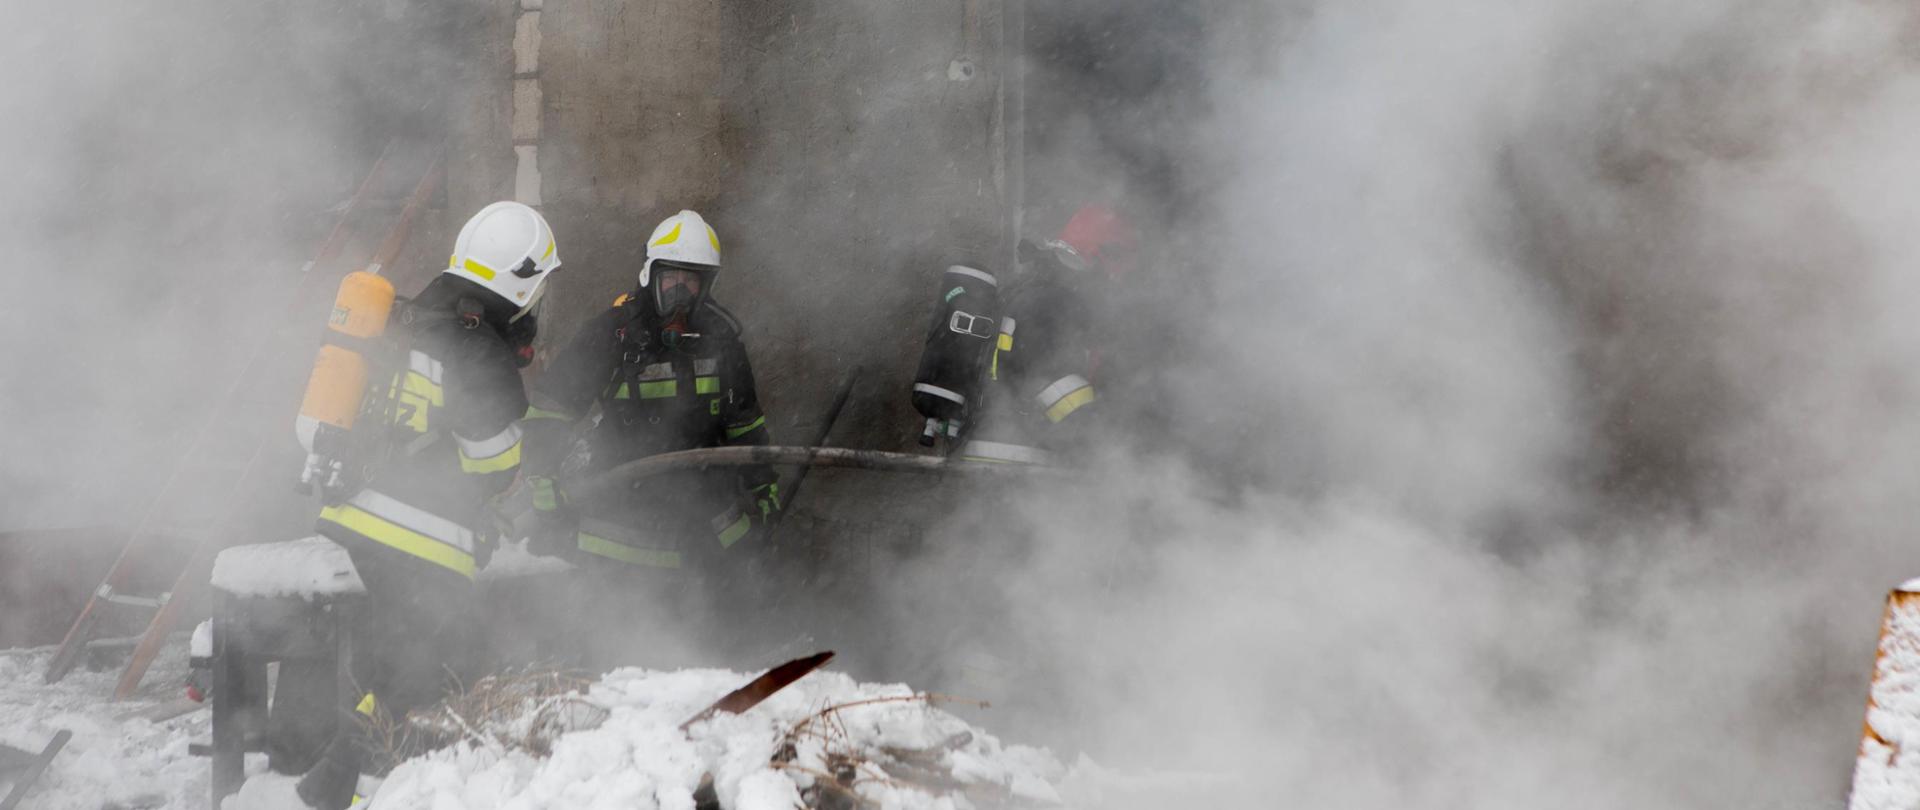 Na zdjęciu widnieją strażacy w trakcie prowadzenia działań gaśniczych przy pożarze warsztatu samochodowego. Jest dzień, słonecznie, są opady śniegu. 